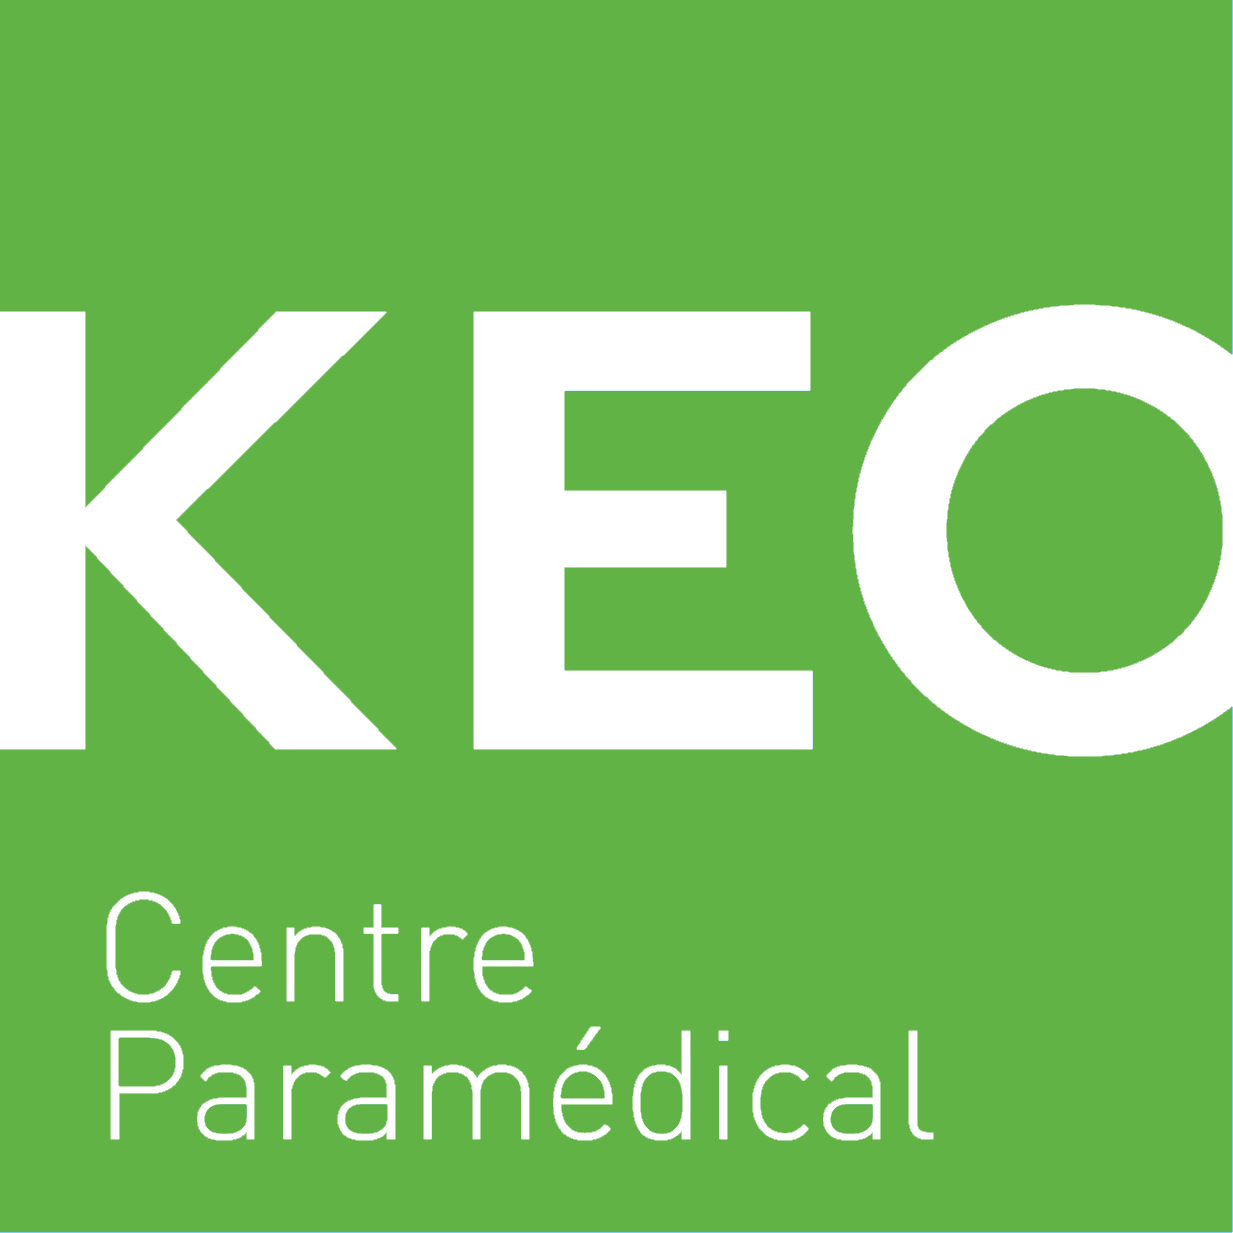 Centre Keo